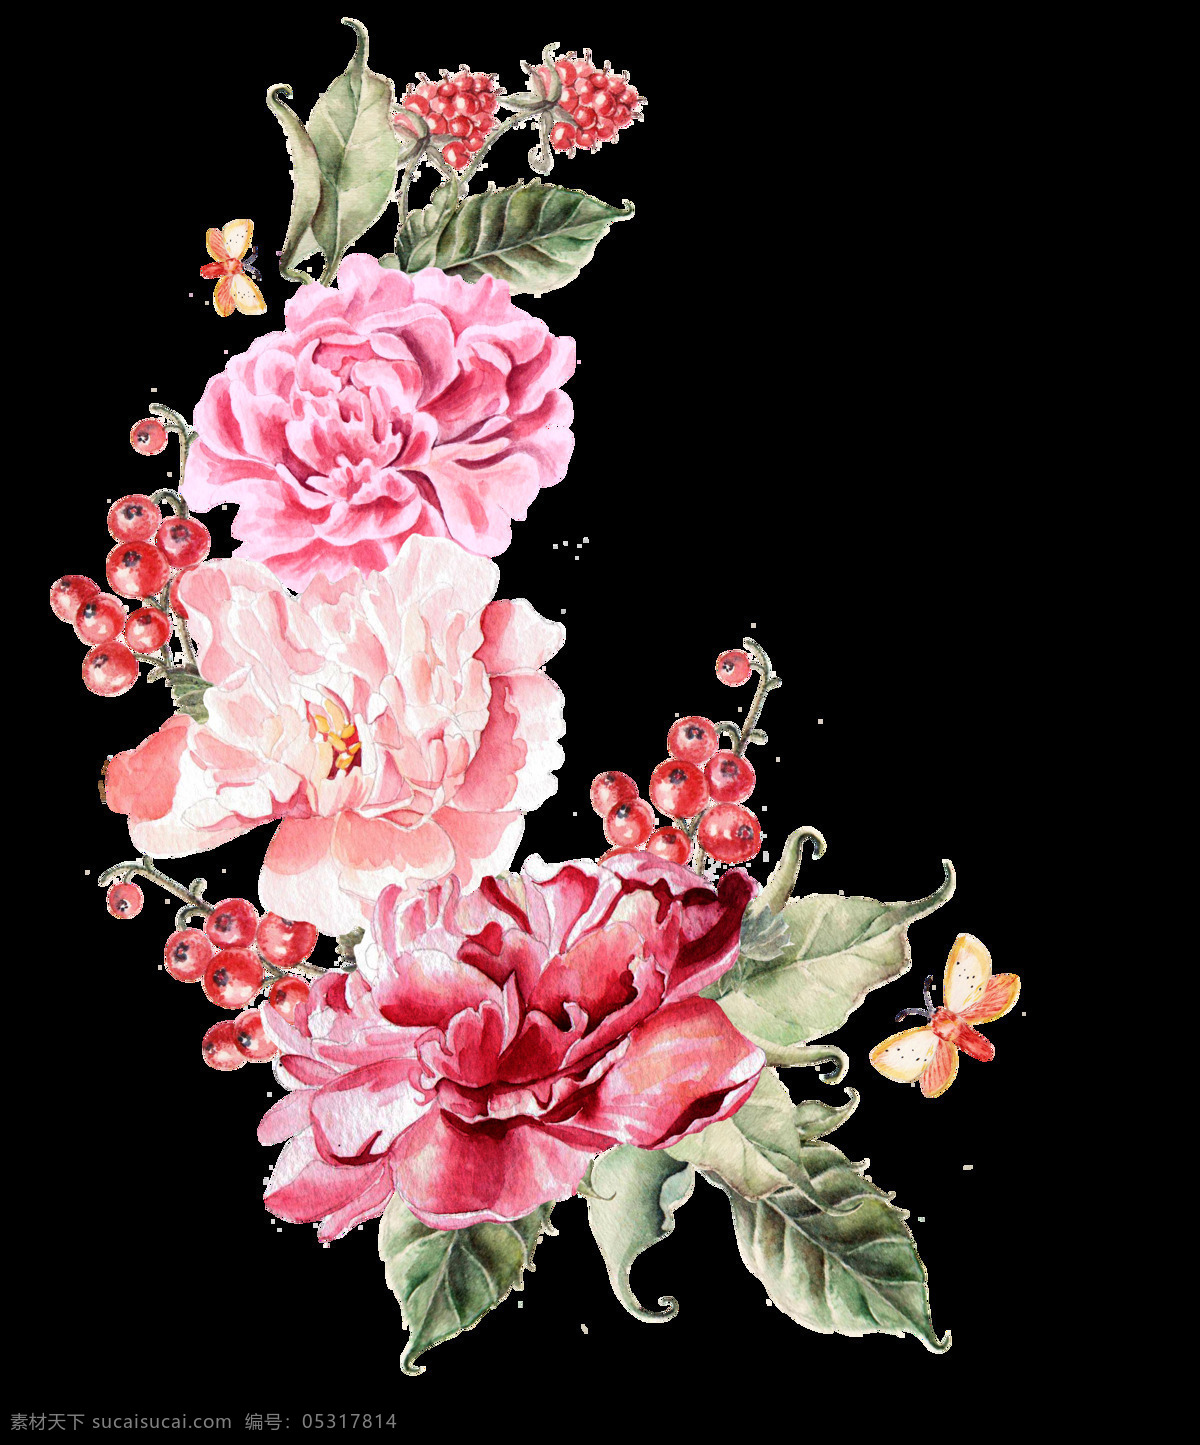 优雅 传统 花卉 卡通 透明 抠图专用 装饰 设计素材